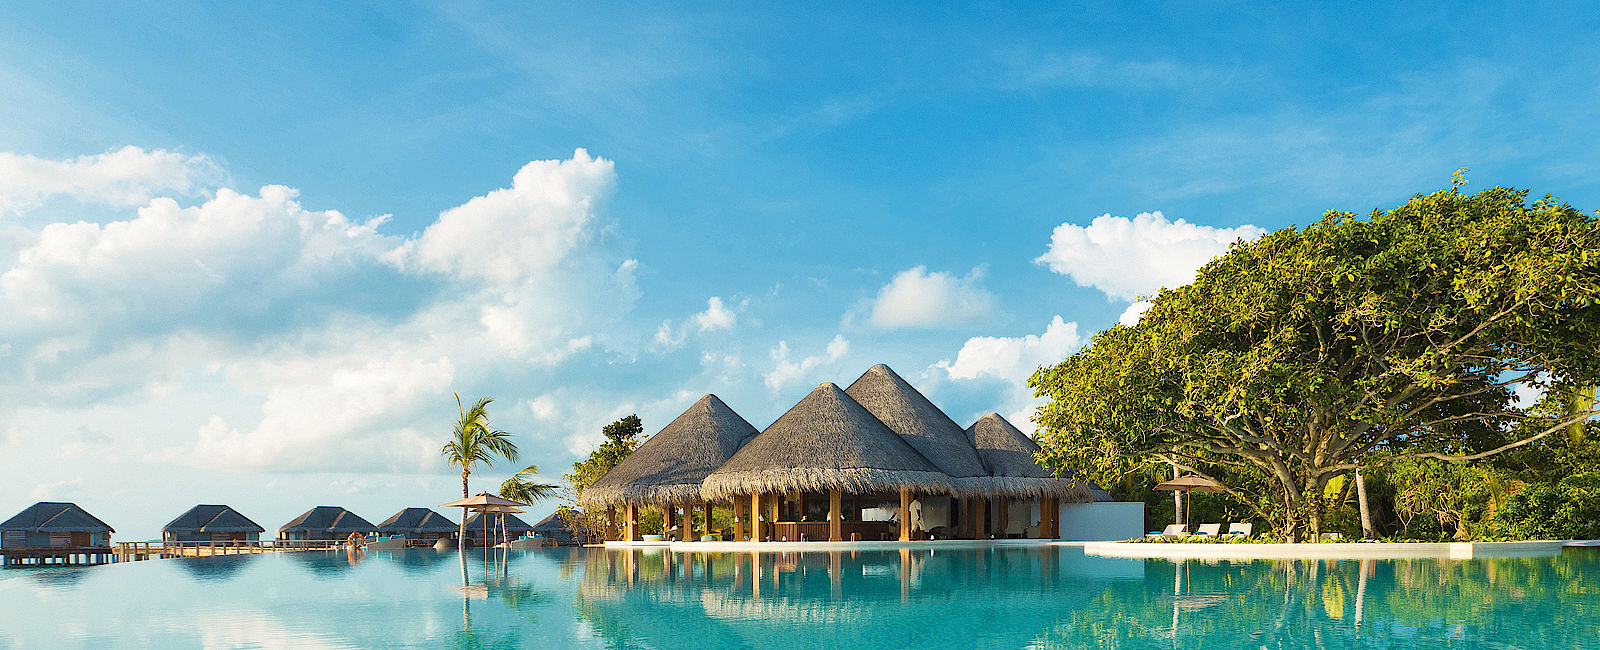 HOTELTEST
 Dusit Thani Maldives 
 Garten im Himmel 